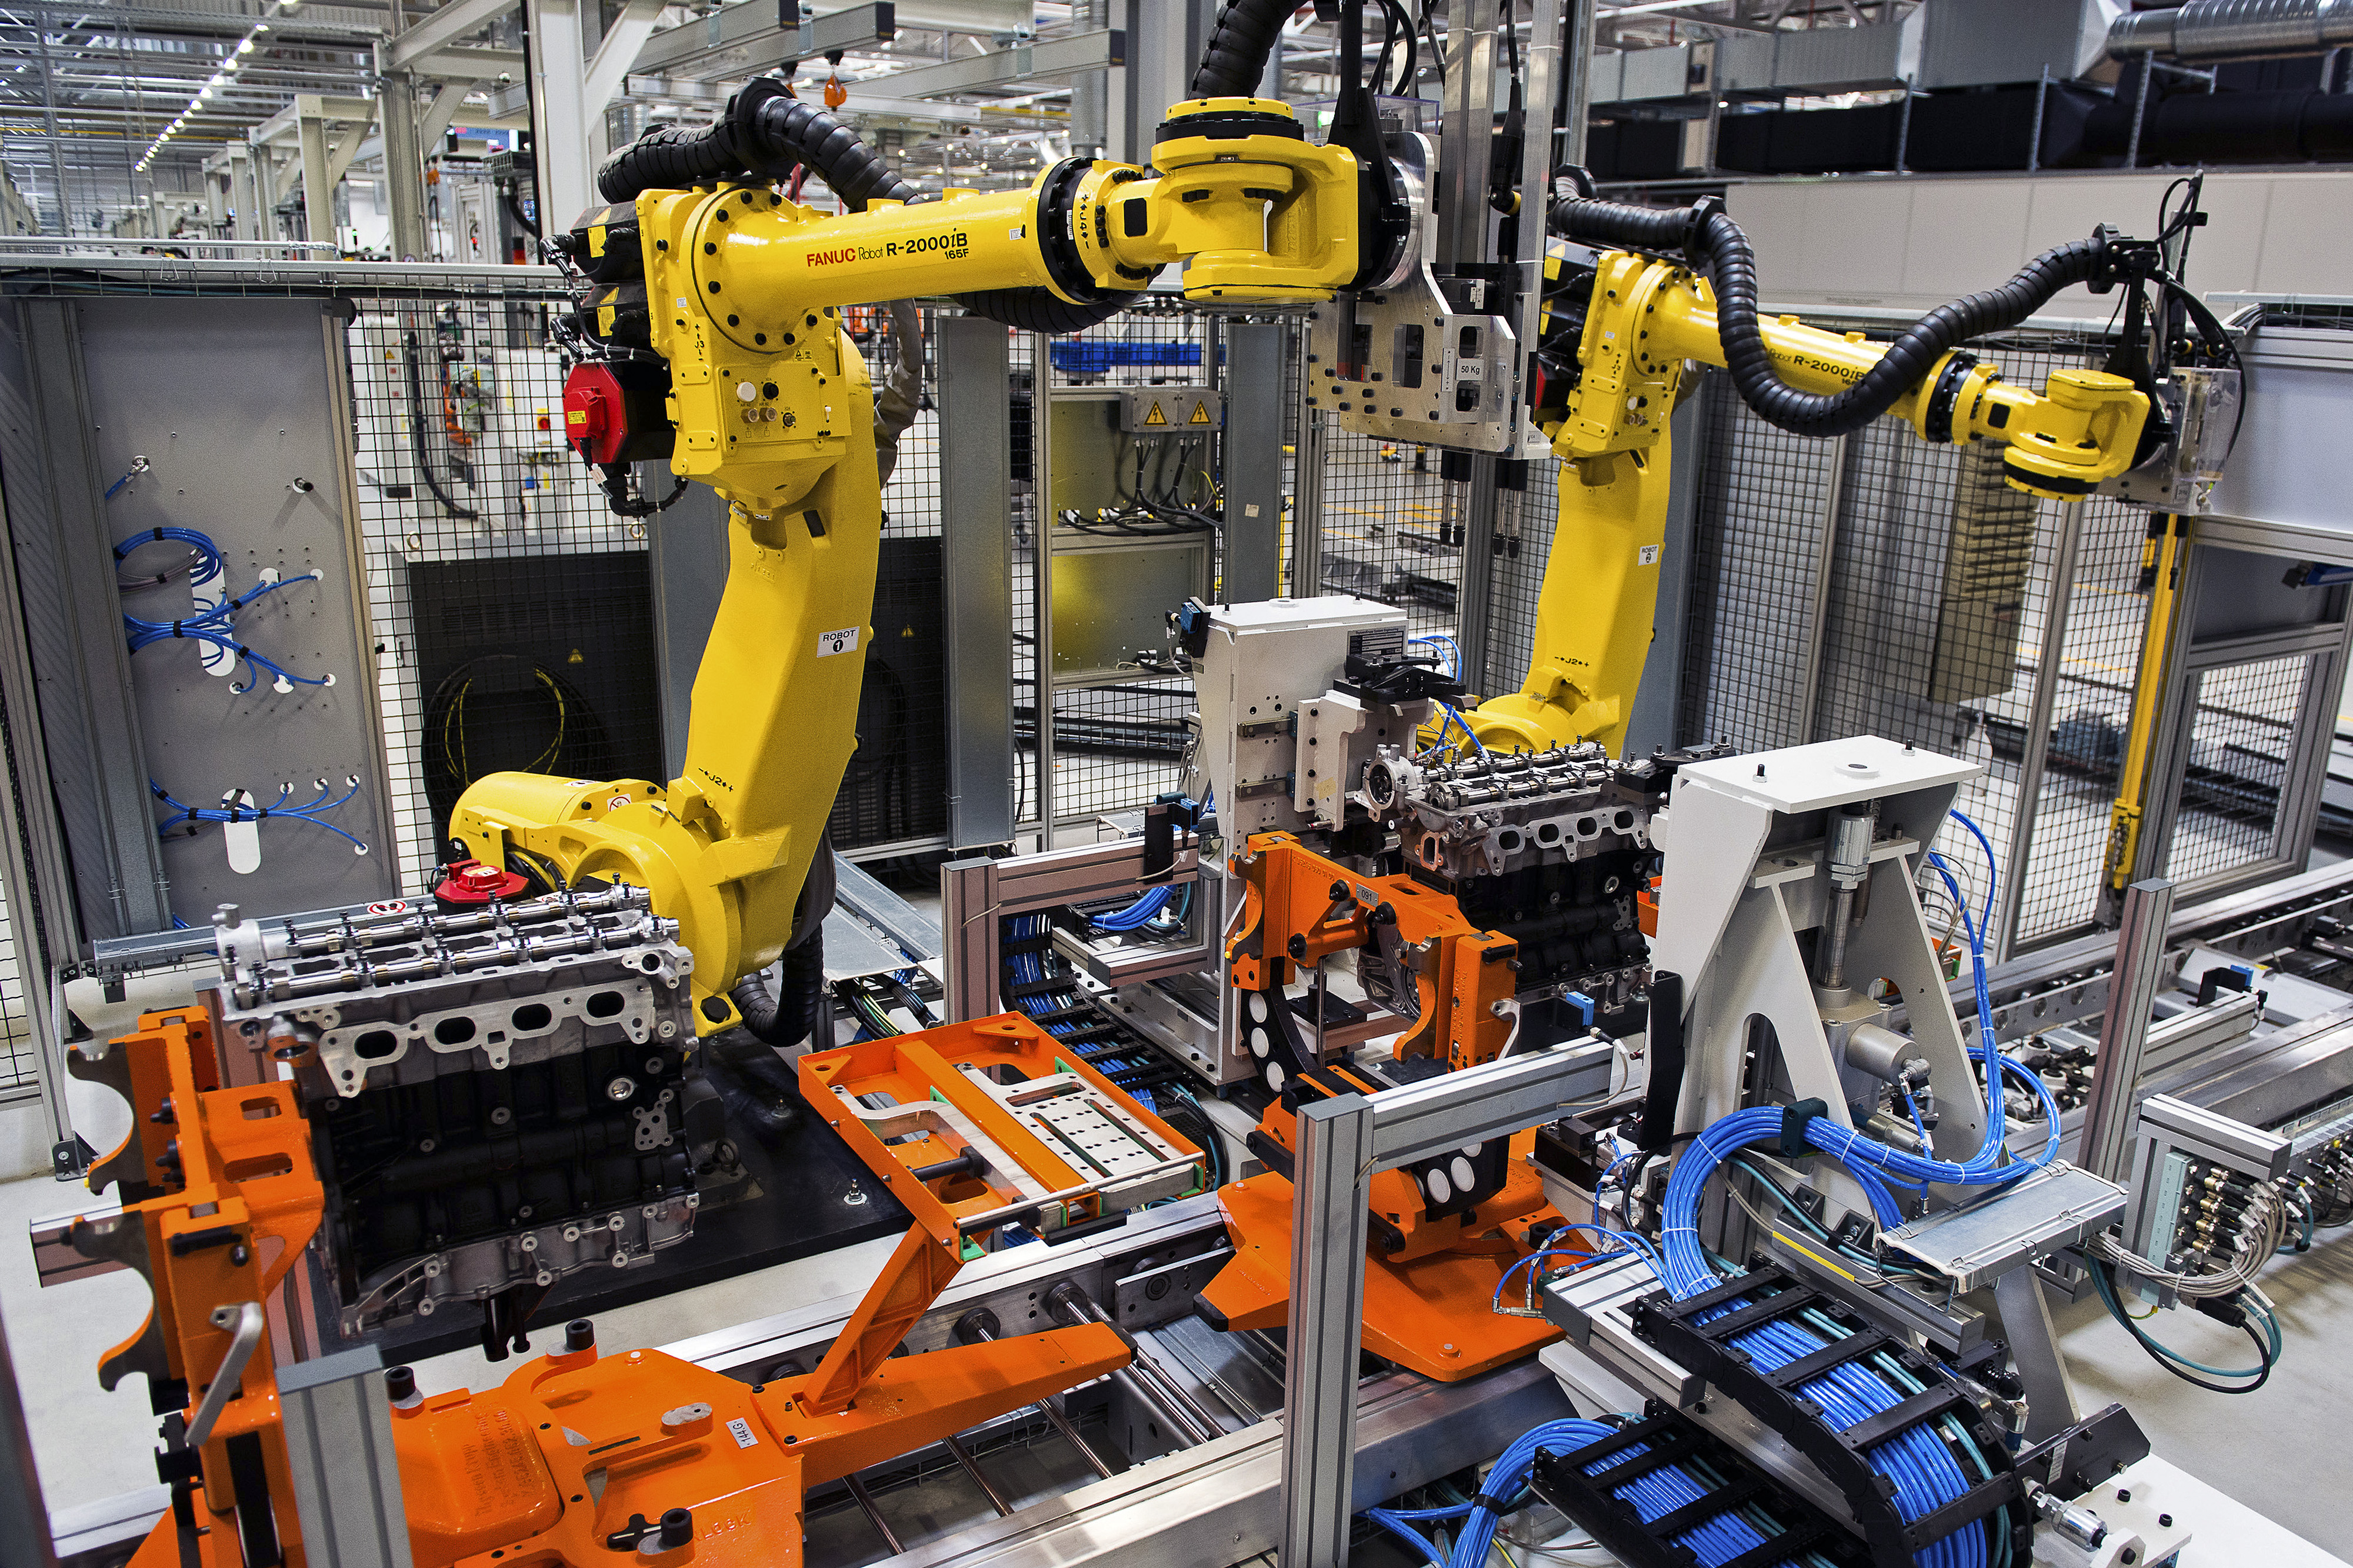 Машины механизмы техническое оборудование. Роботы фирмы Fanuc. Роботизированный Технологический комплекс РТК. Fanuc производители роботов. Автоматизация производства.